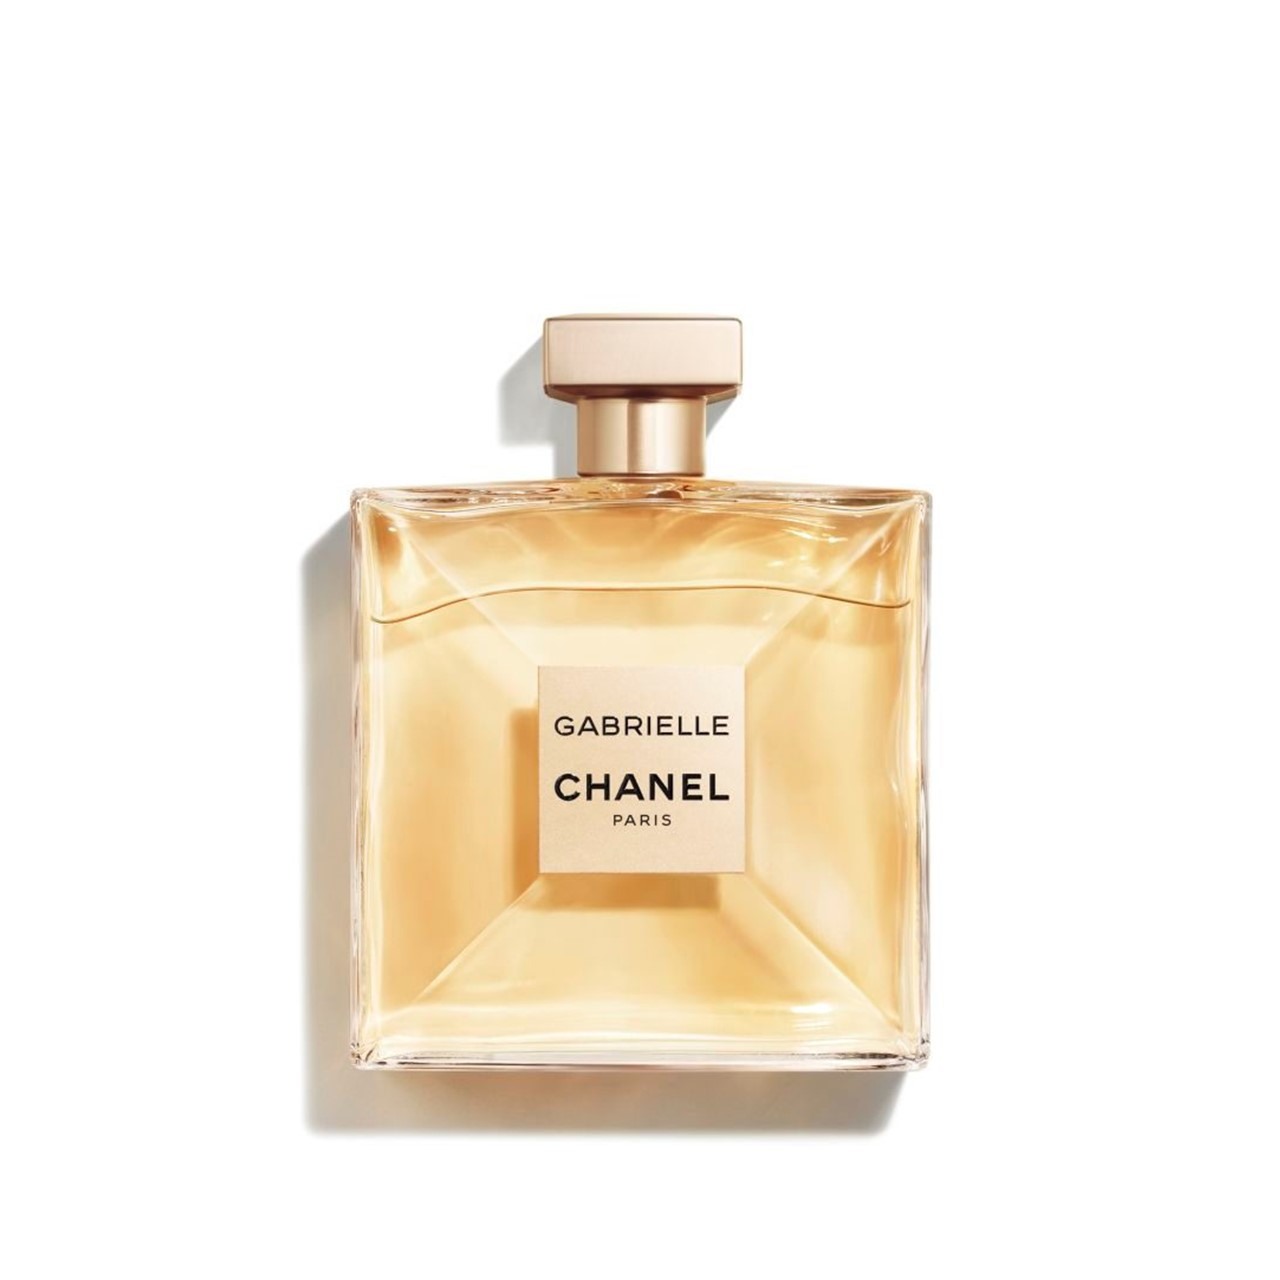 Chanel Gabrielle Eau de Parfum, Perfume For Women, 3.4 Oz 